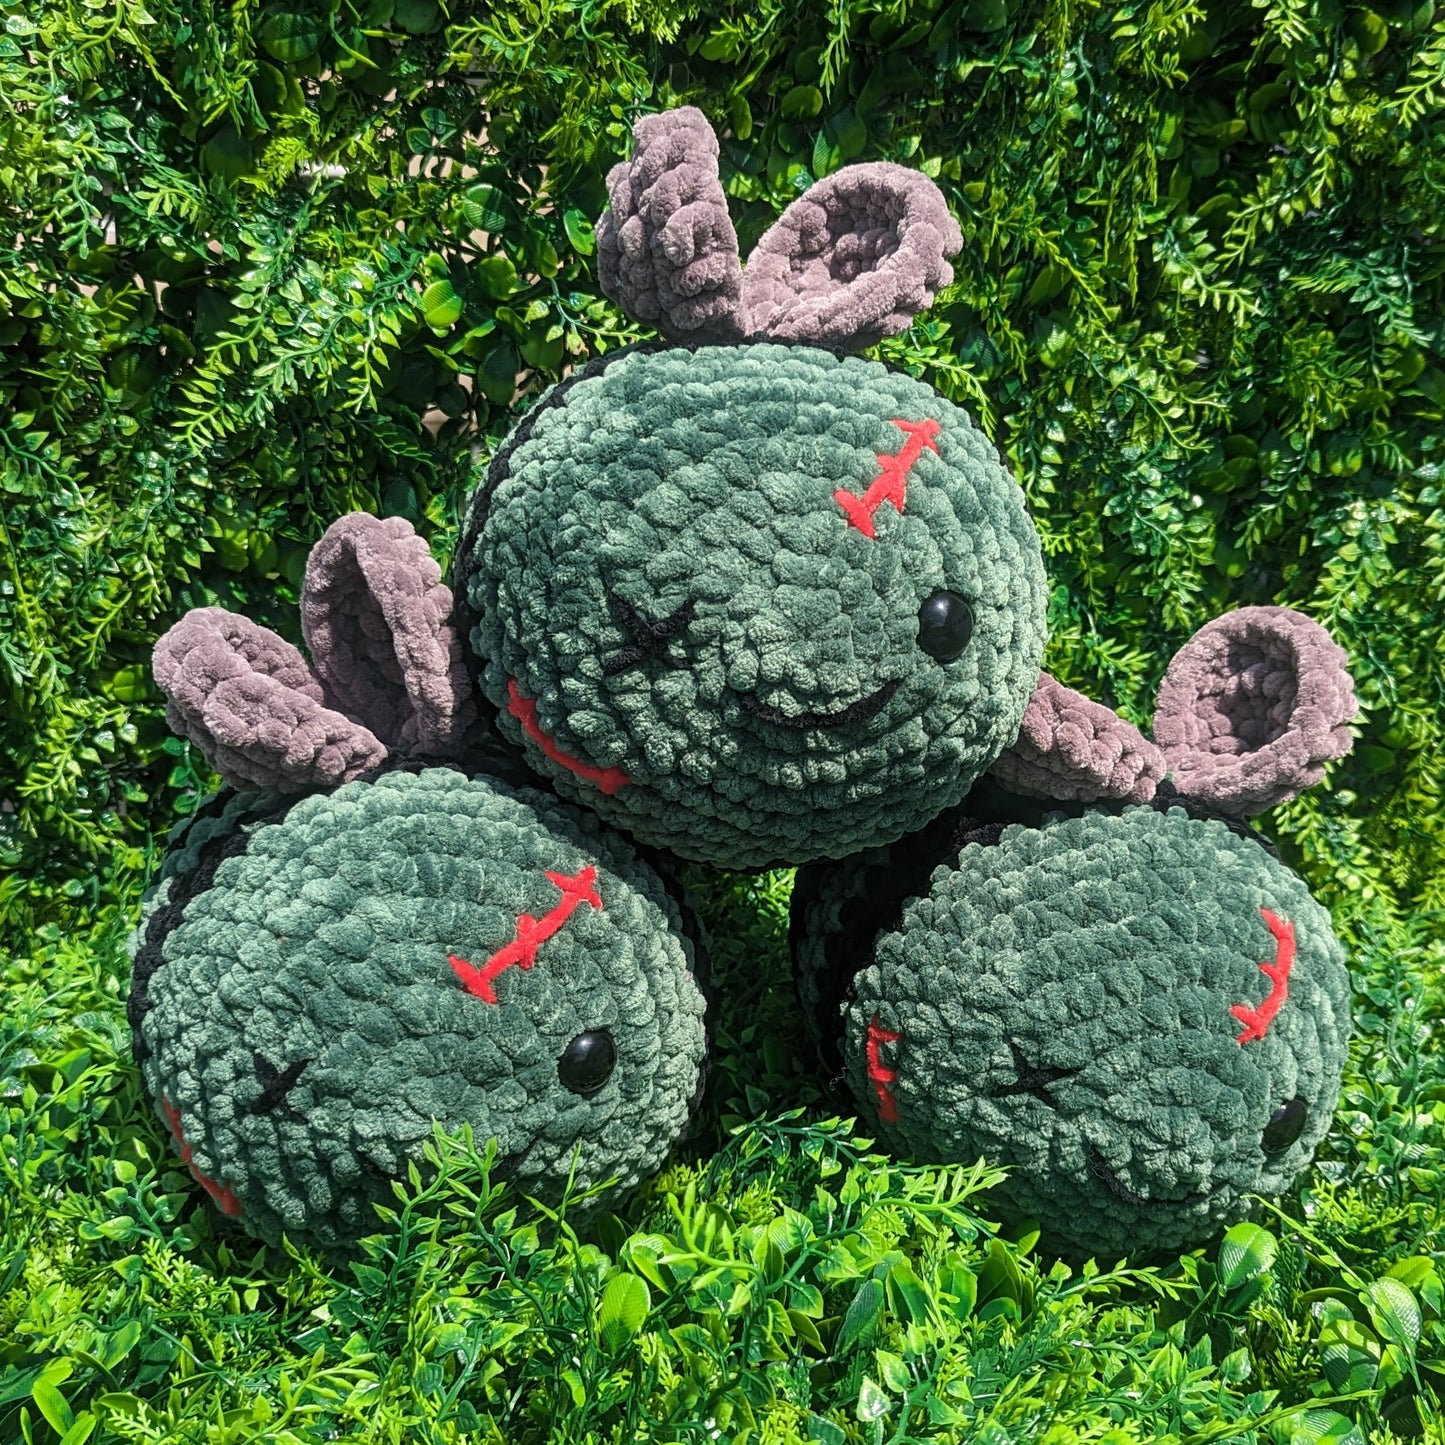 Jumbo 'ZomBee' Zombie Bee Crochet Plushie